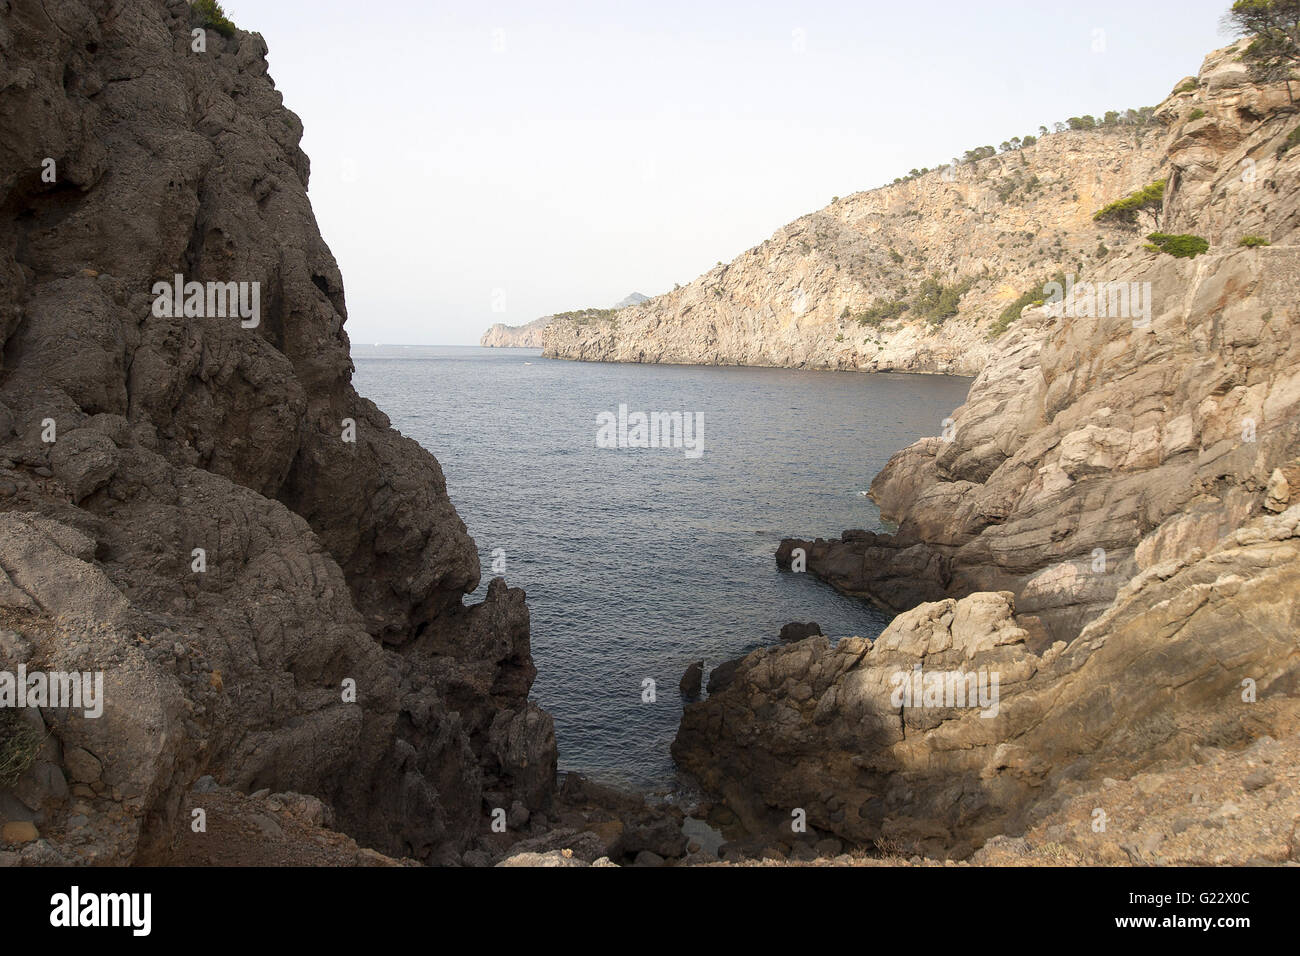 ein schönes Bild von der felsige Bucht an der Küste von Palma De Mallorca, Spanien, am Meer, Tourismus, Urlaub, Sommer, Natur, rel Stockfoto